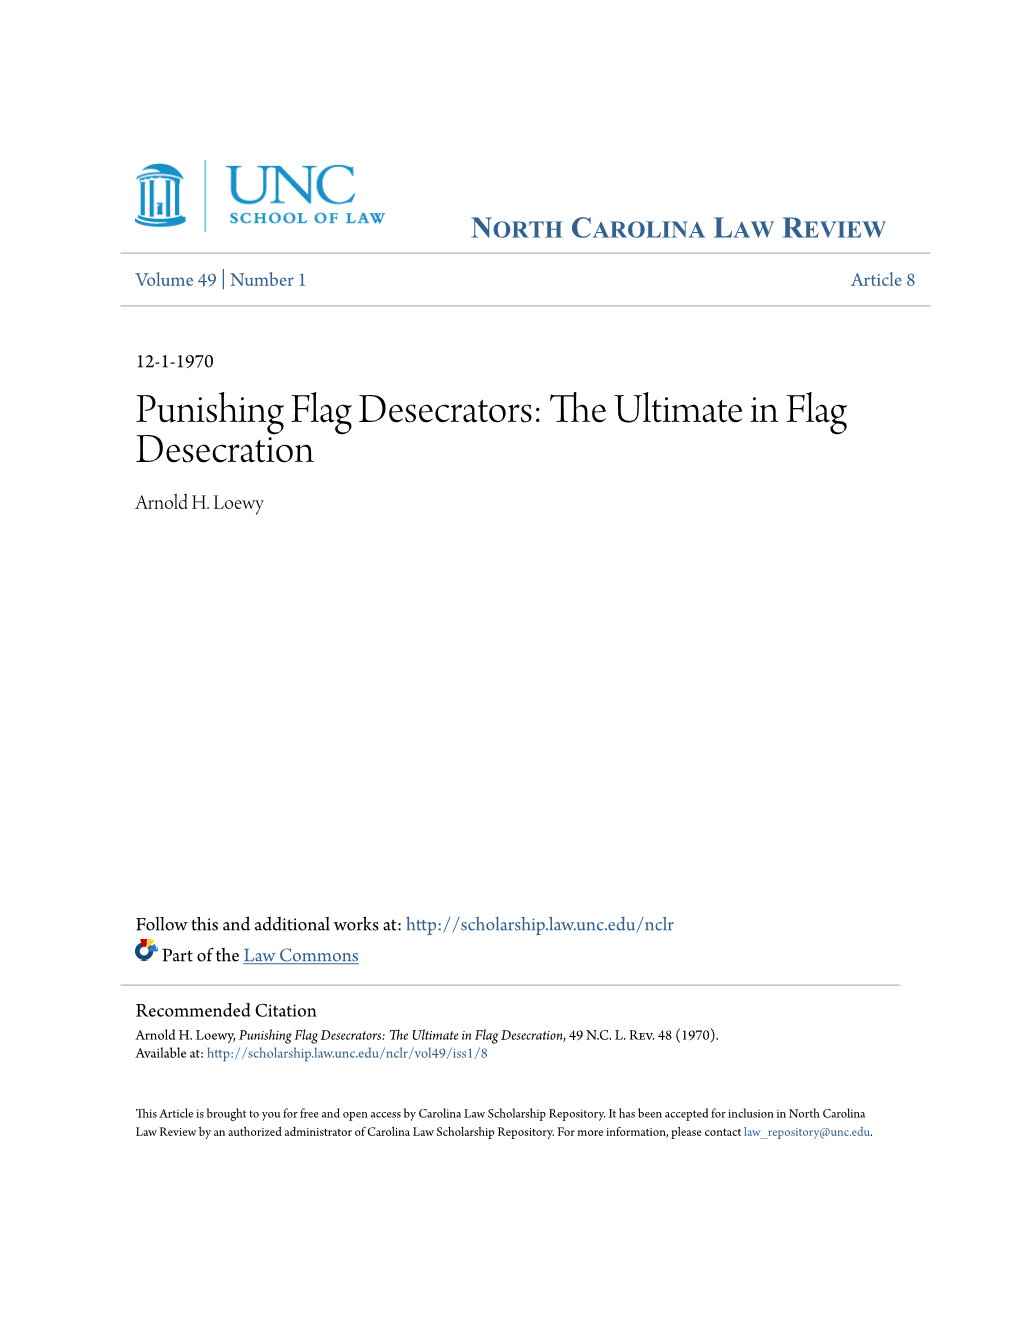 Punishing Flag Desecrators: the Ultimate in Flag Desecration Arnold H